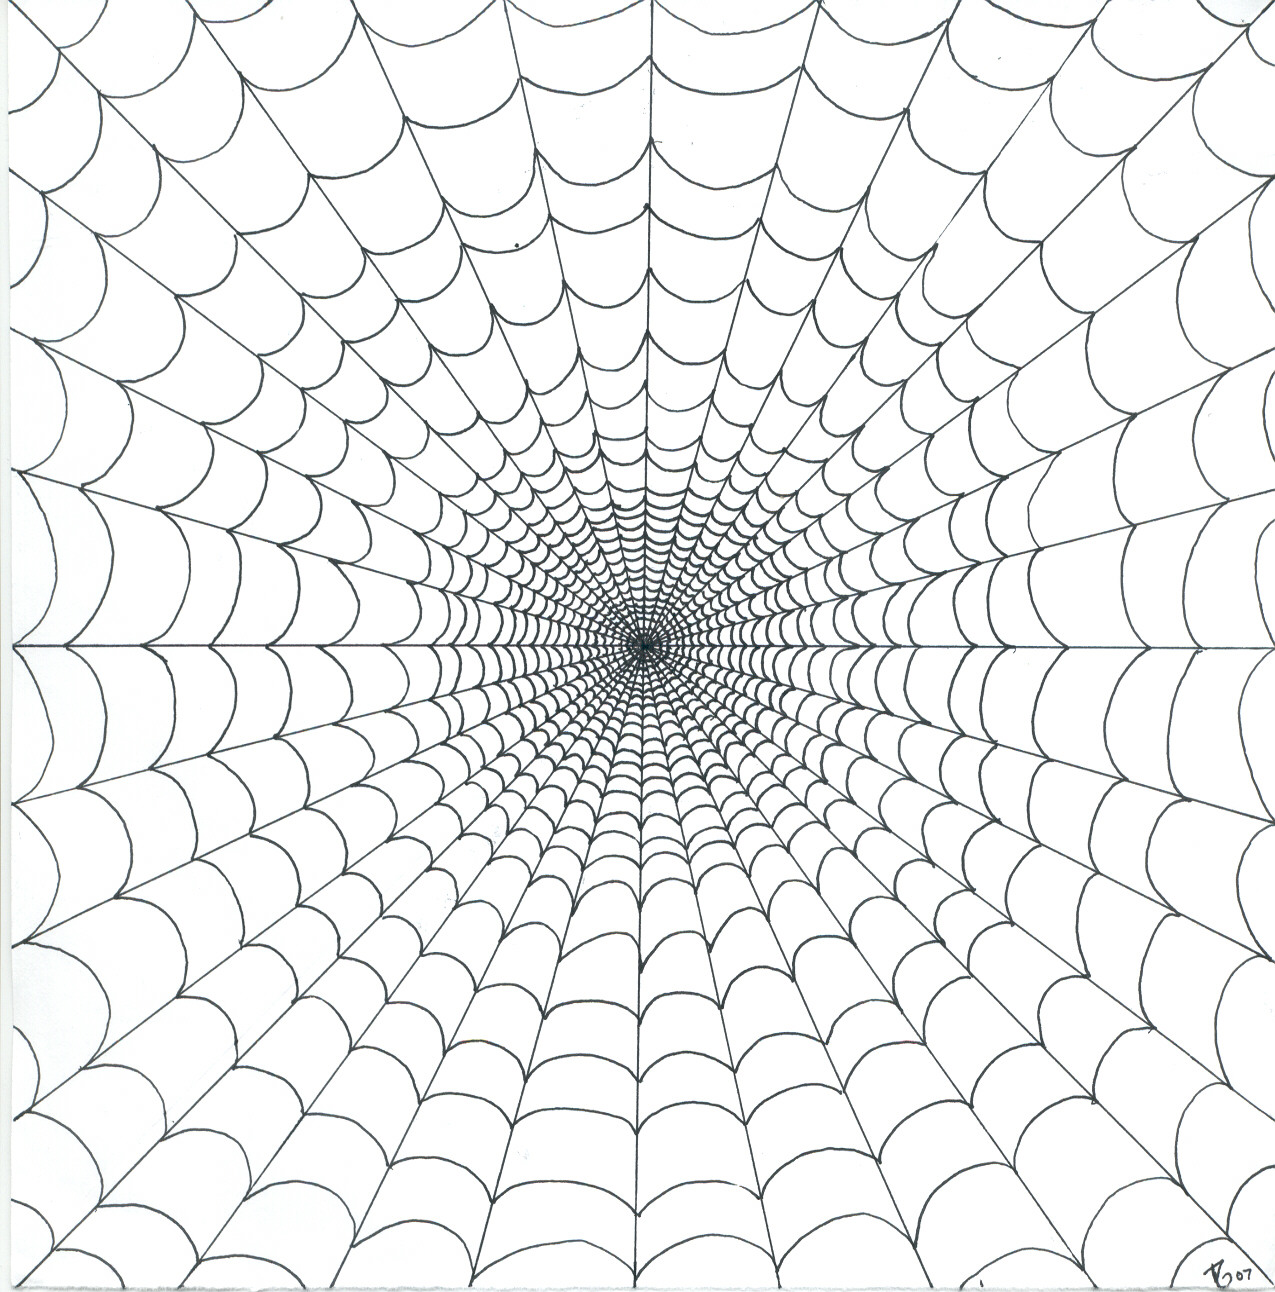 Spider_Web_by_Gynne.jpg